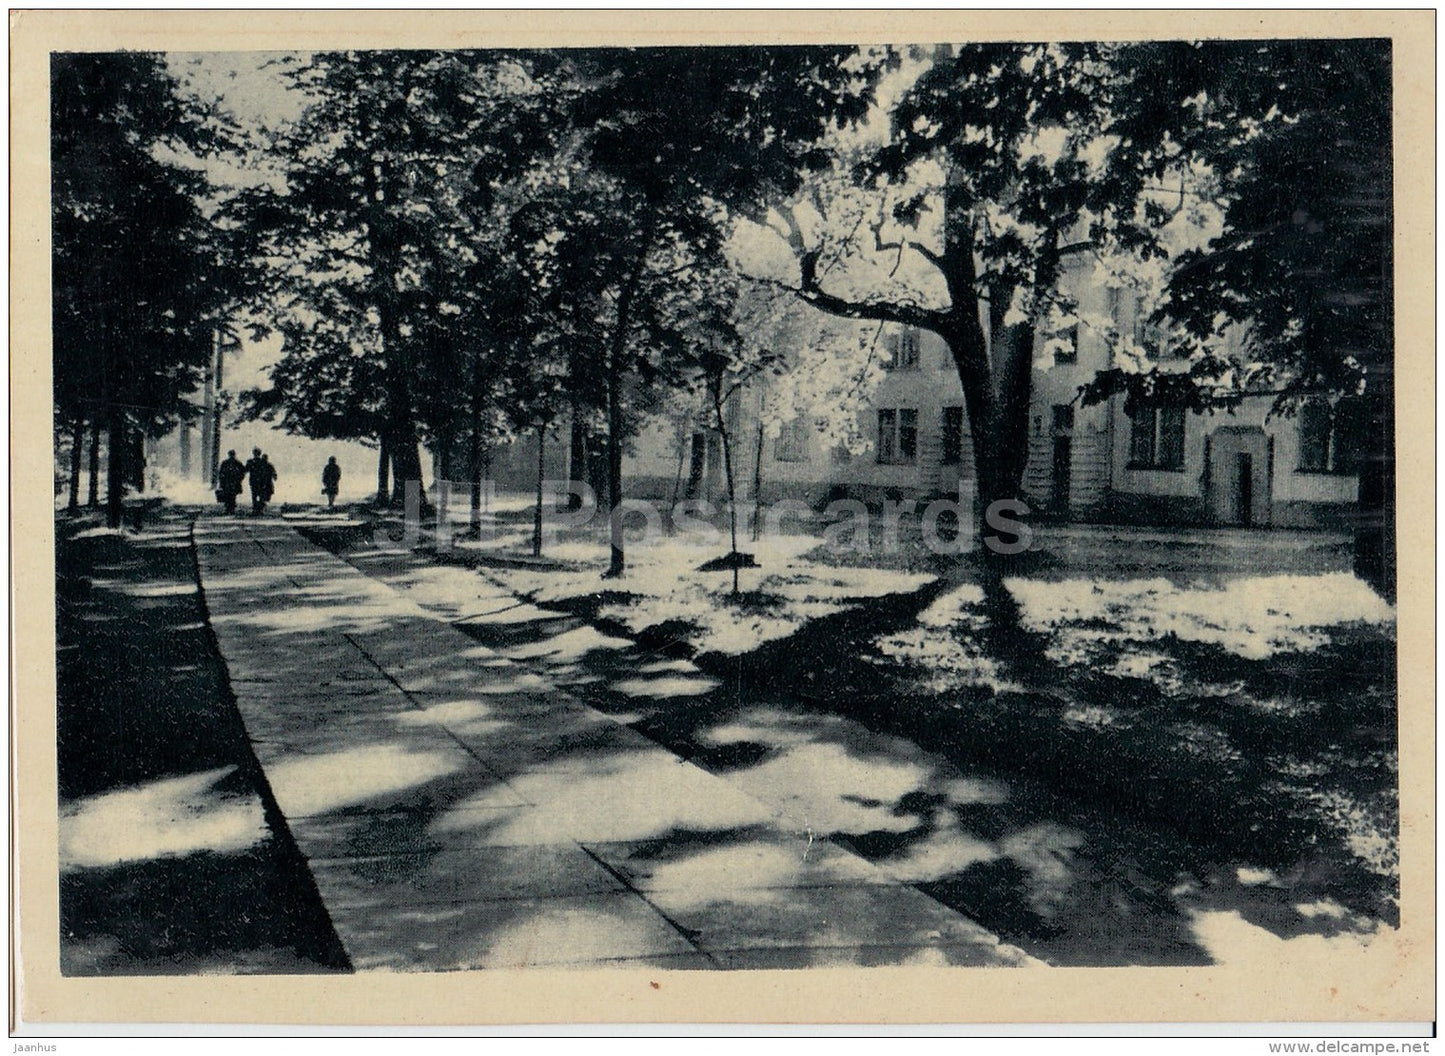 Old Park - Pärnu - 1964 - Estonia USSR - unused - JH Postcards